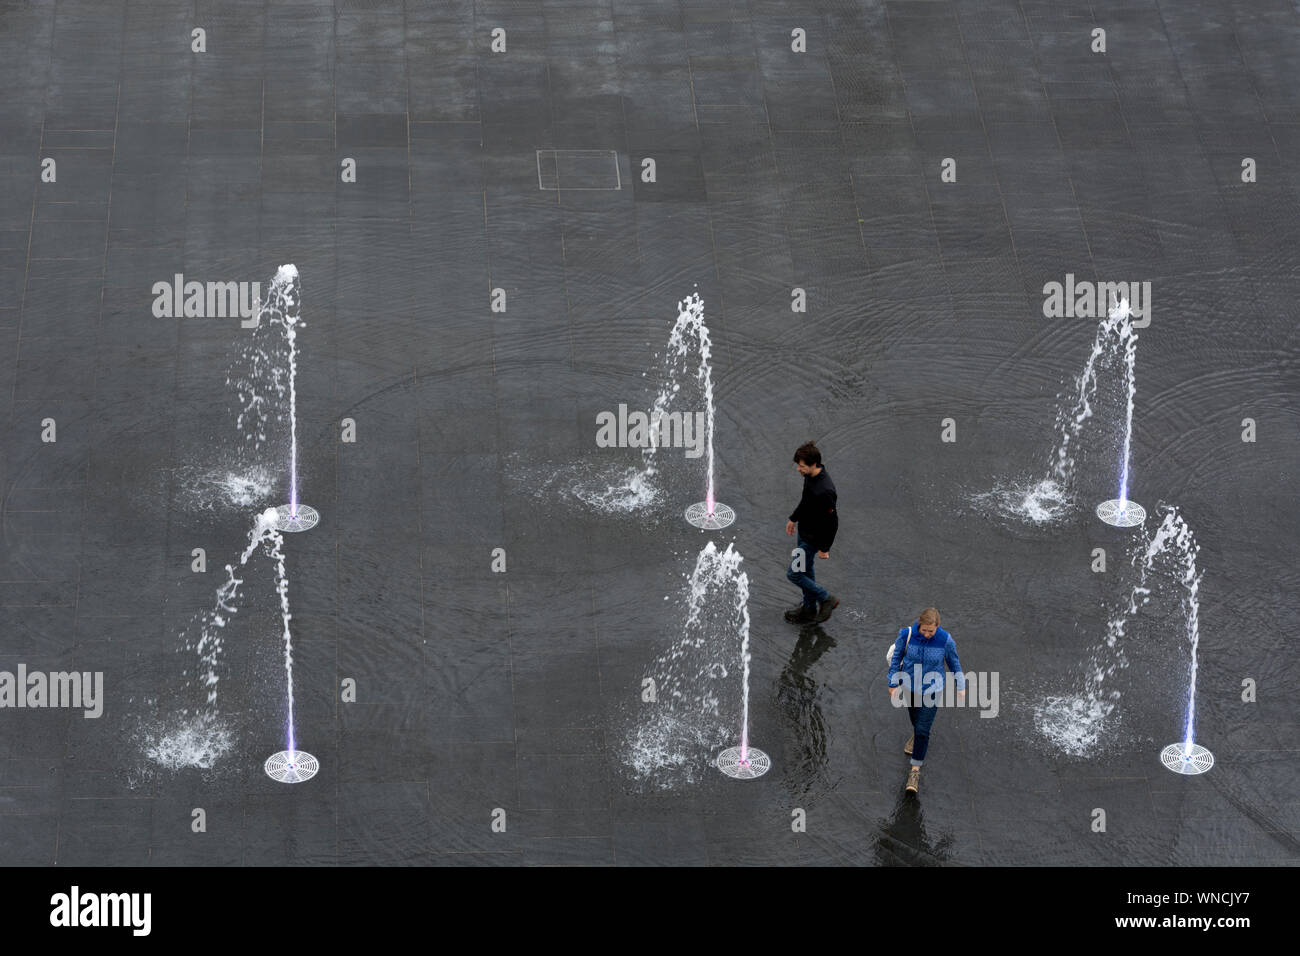 Vista aerea dell'acqua nuova funzione in Centenary Square, Birmingham, Regno Unito Foto Stock